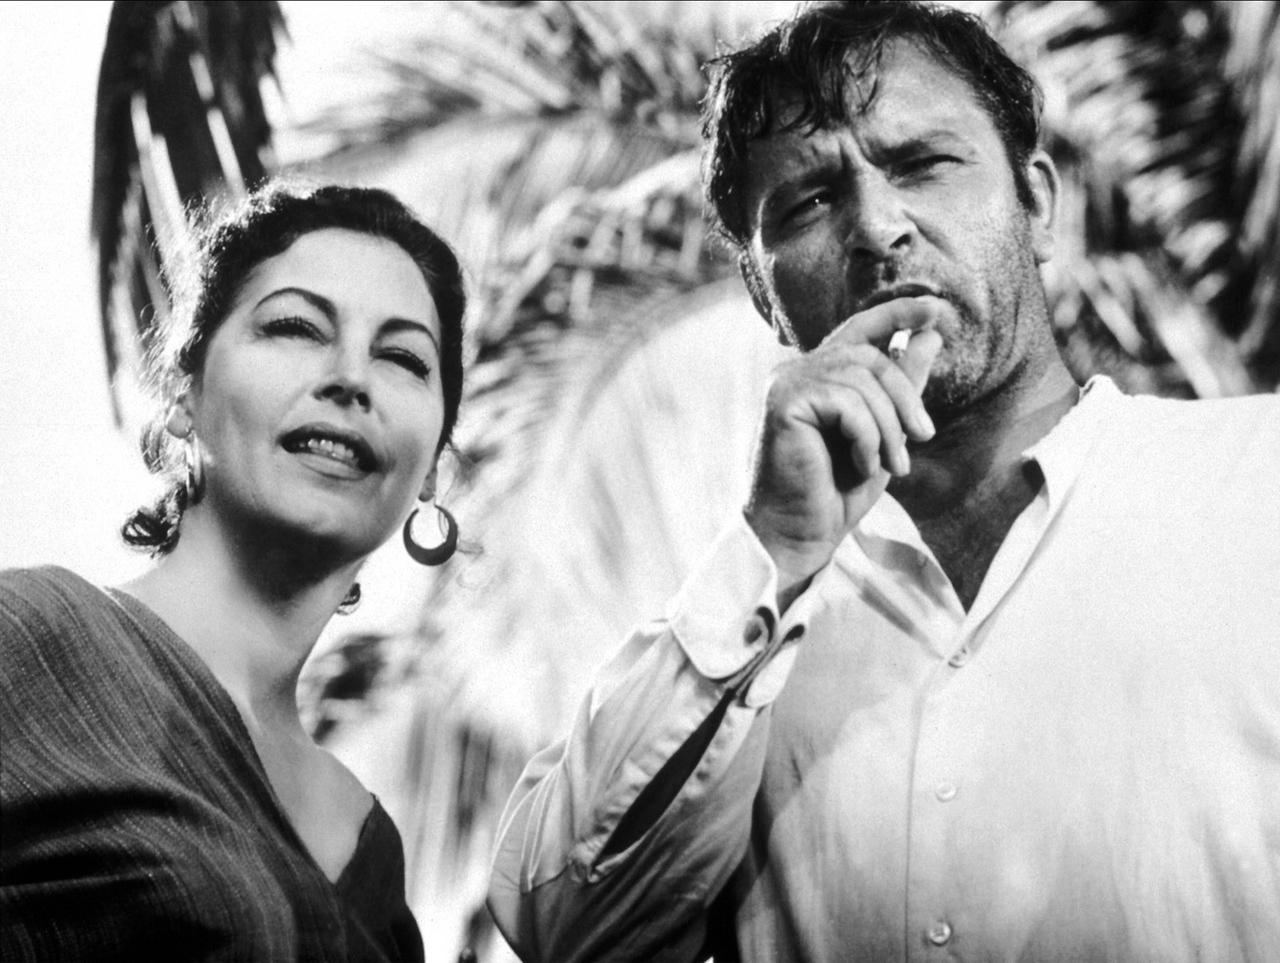 Szene aus dem Film "Die Nacht des Leguan": Ava Gardner und der Zigarette rauchende Richard Burton stehen nebeneinander und schauen nach vorne